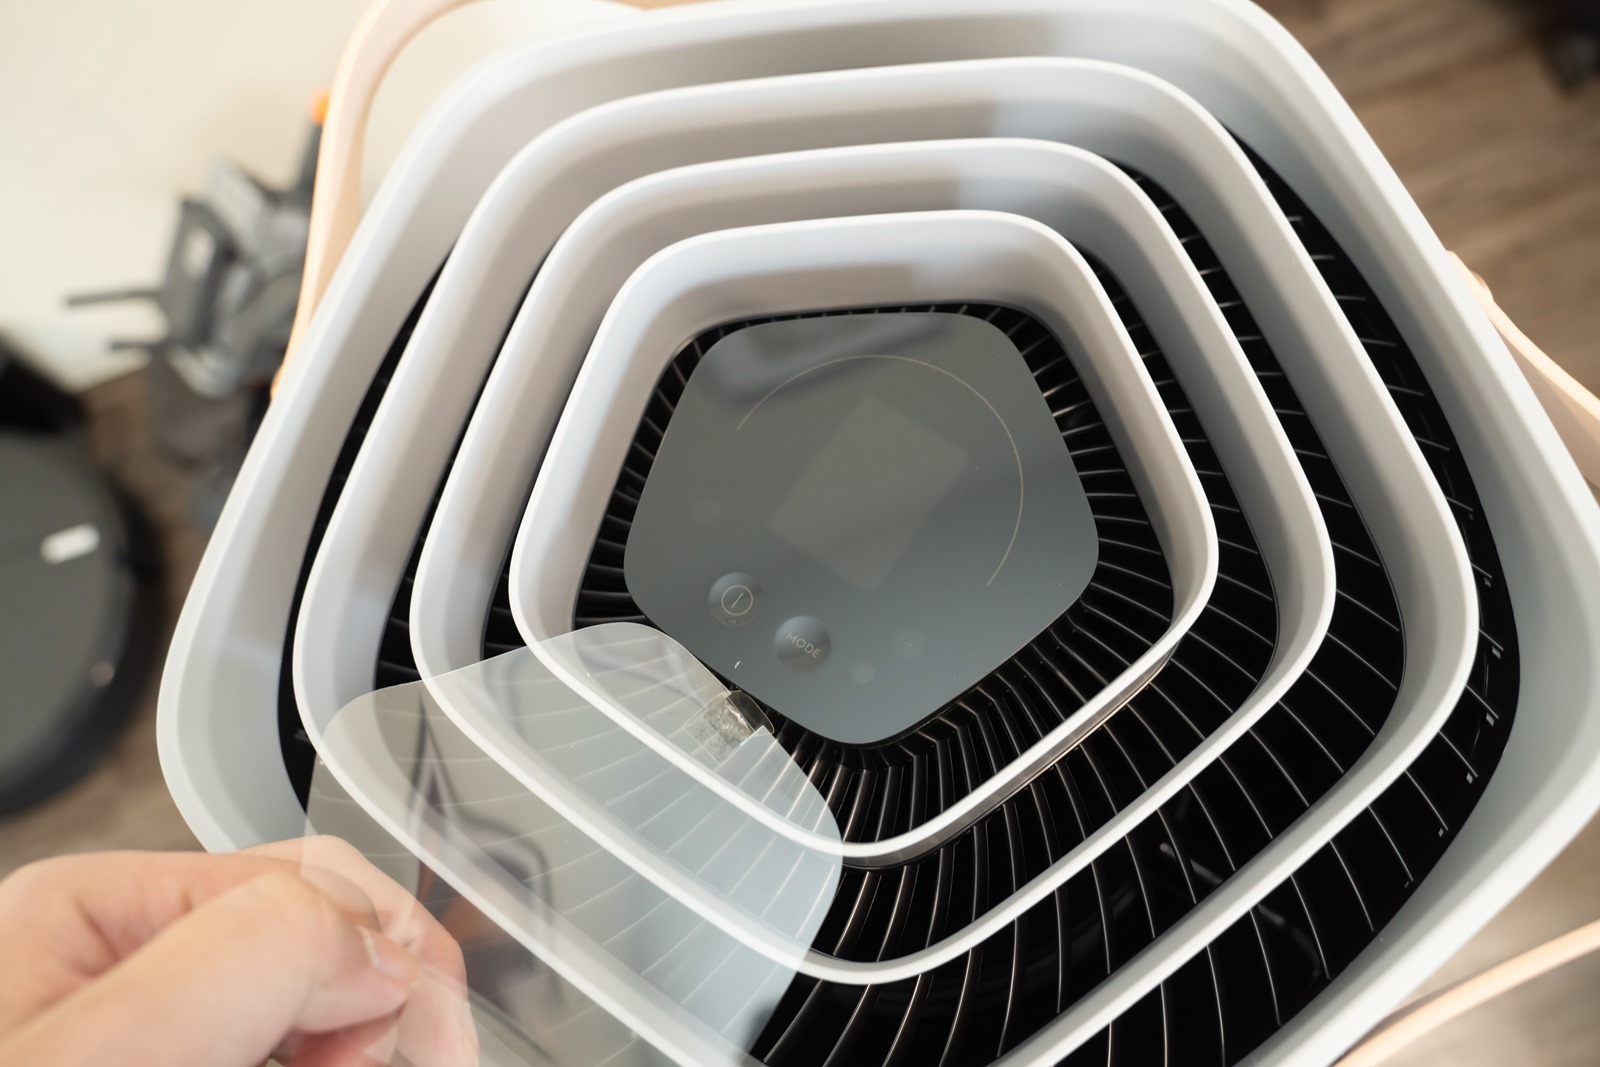 伊萊克斯 PURE A9 高效能抗菌空氣清淨機帶來清新居家的健康好空氣 @3C 達人廖阿輝